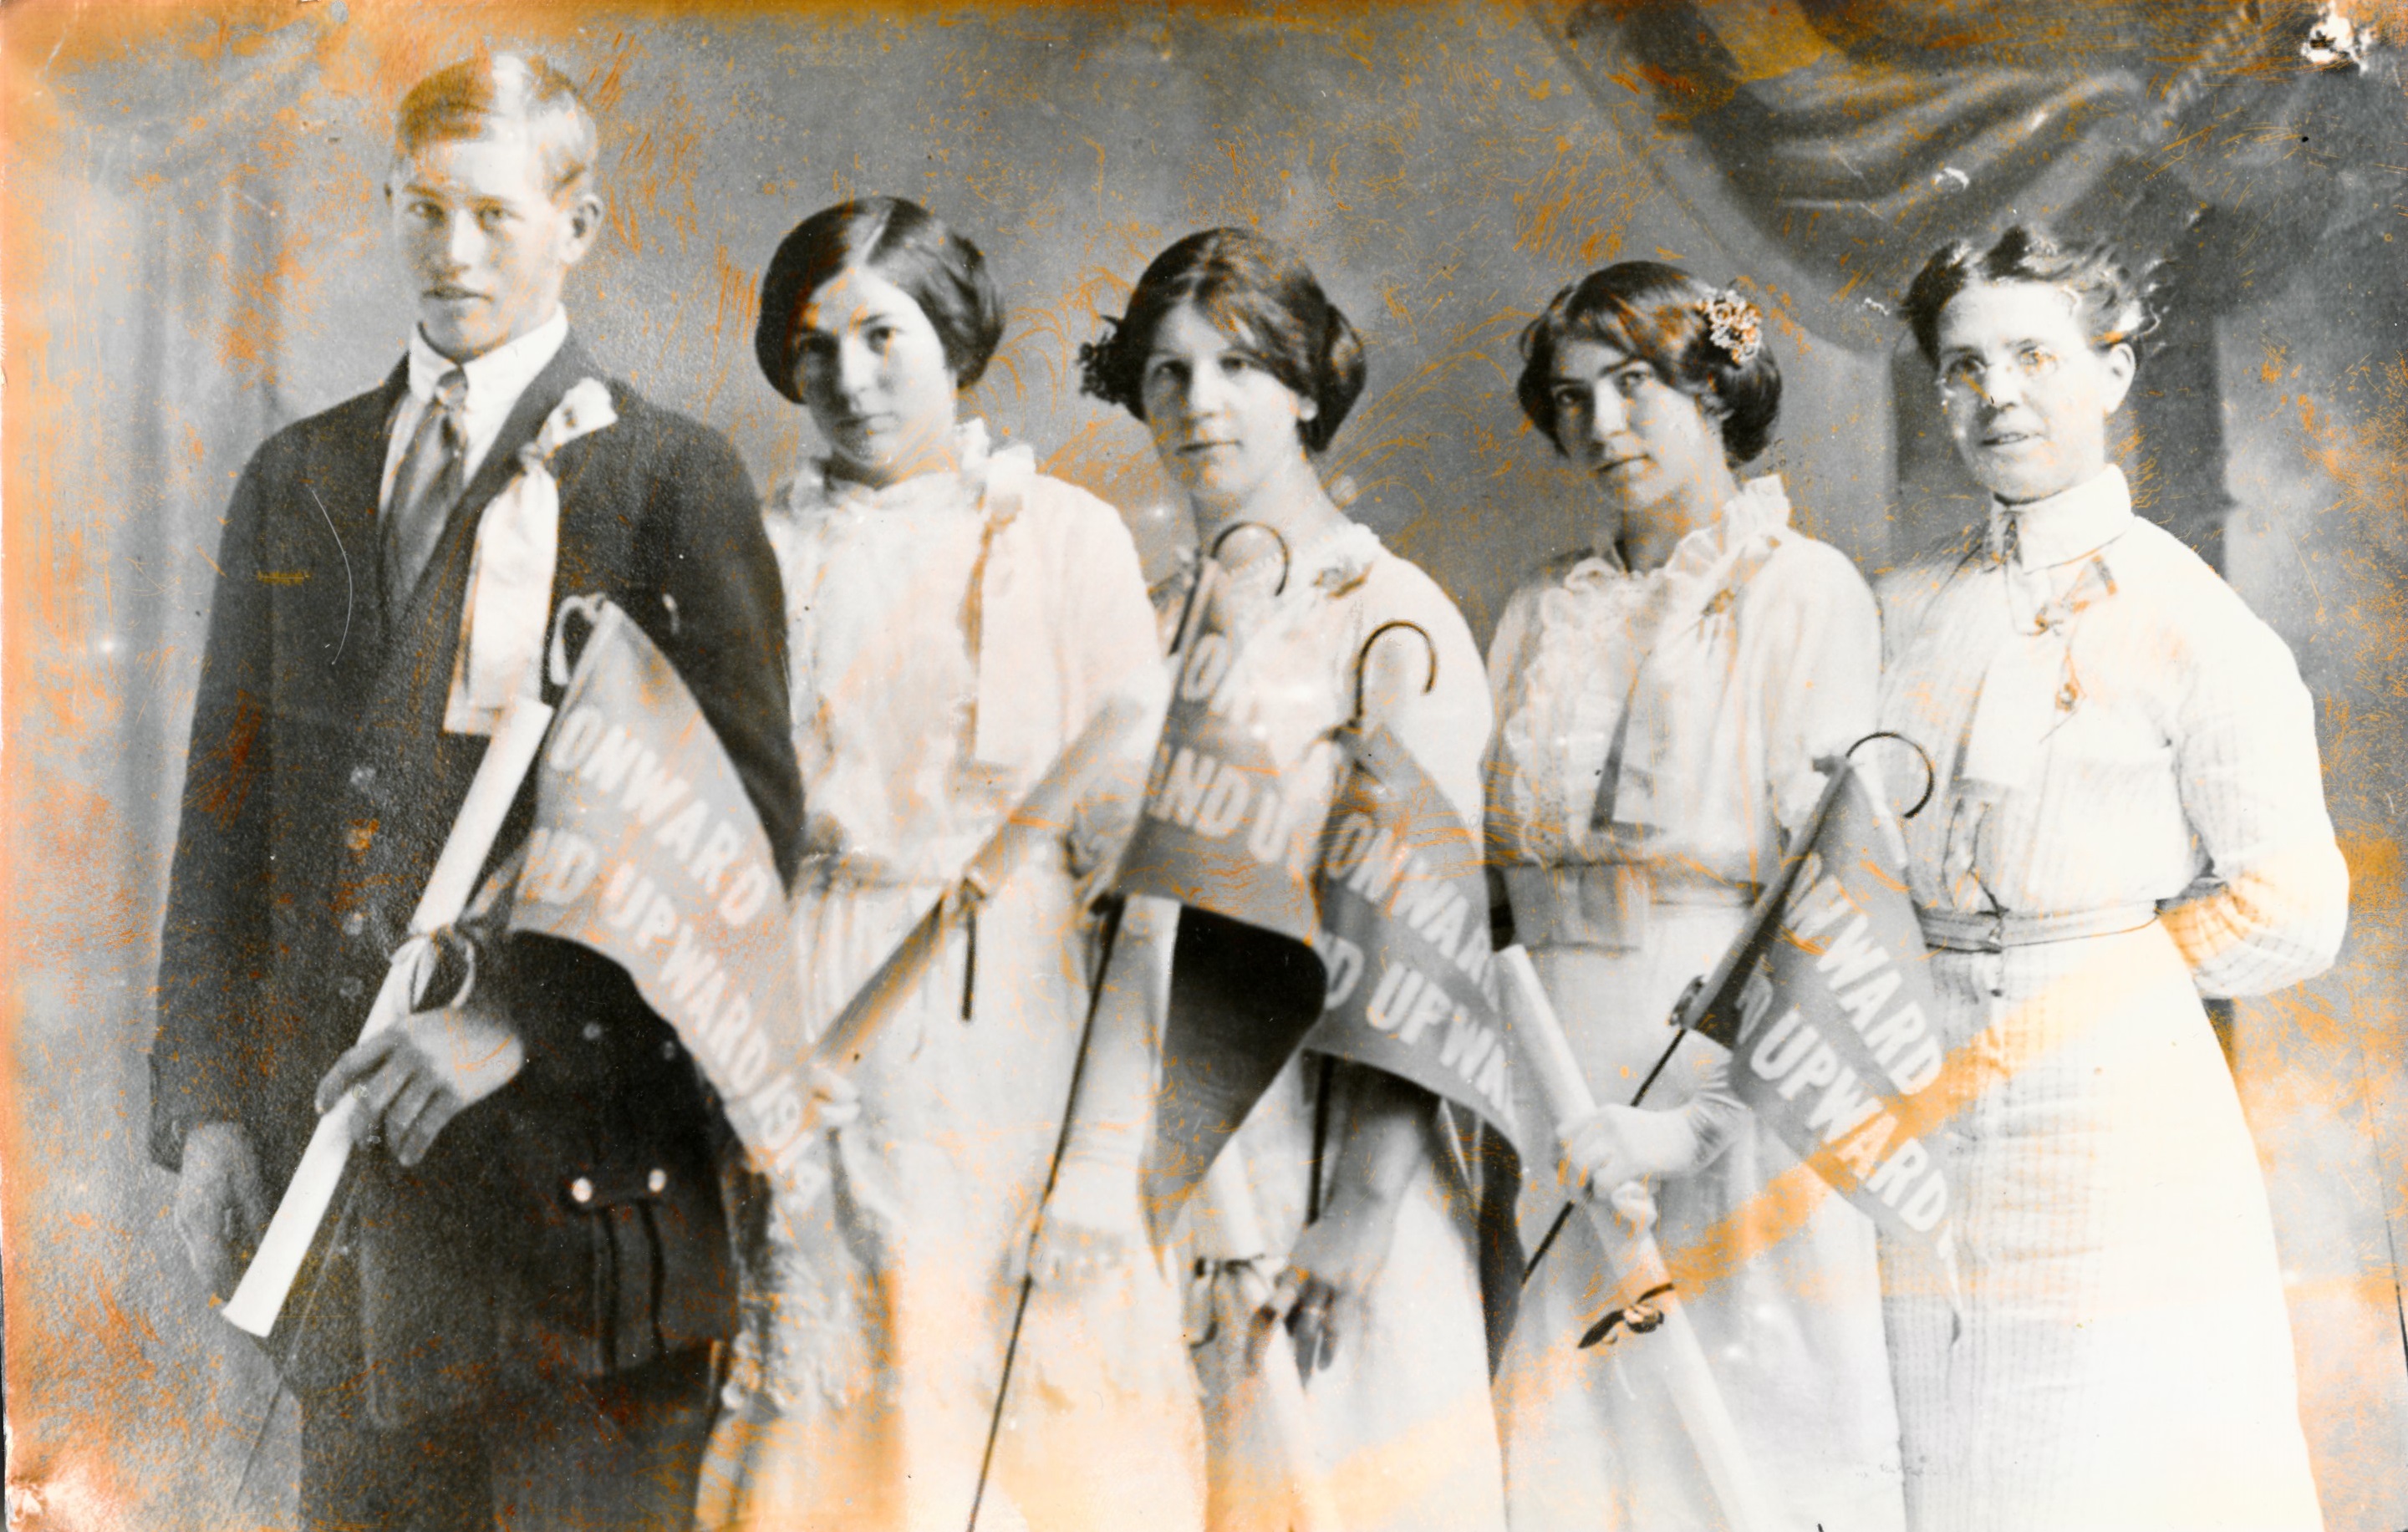 Five Woodward School students in 191?